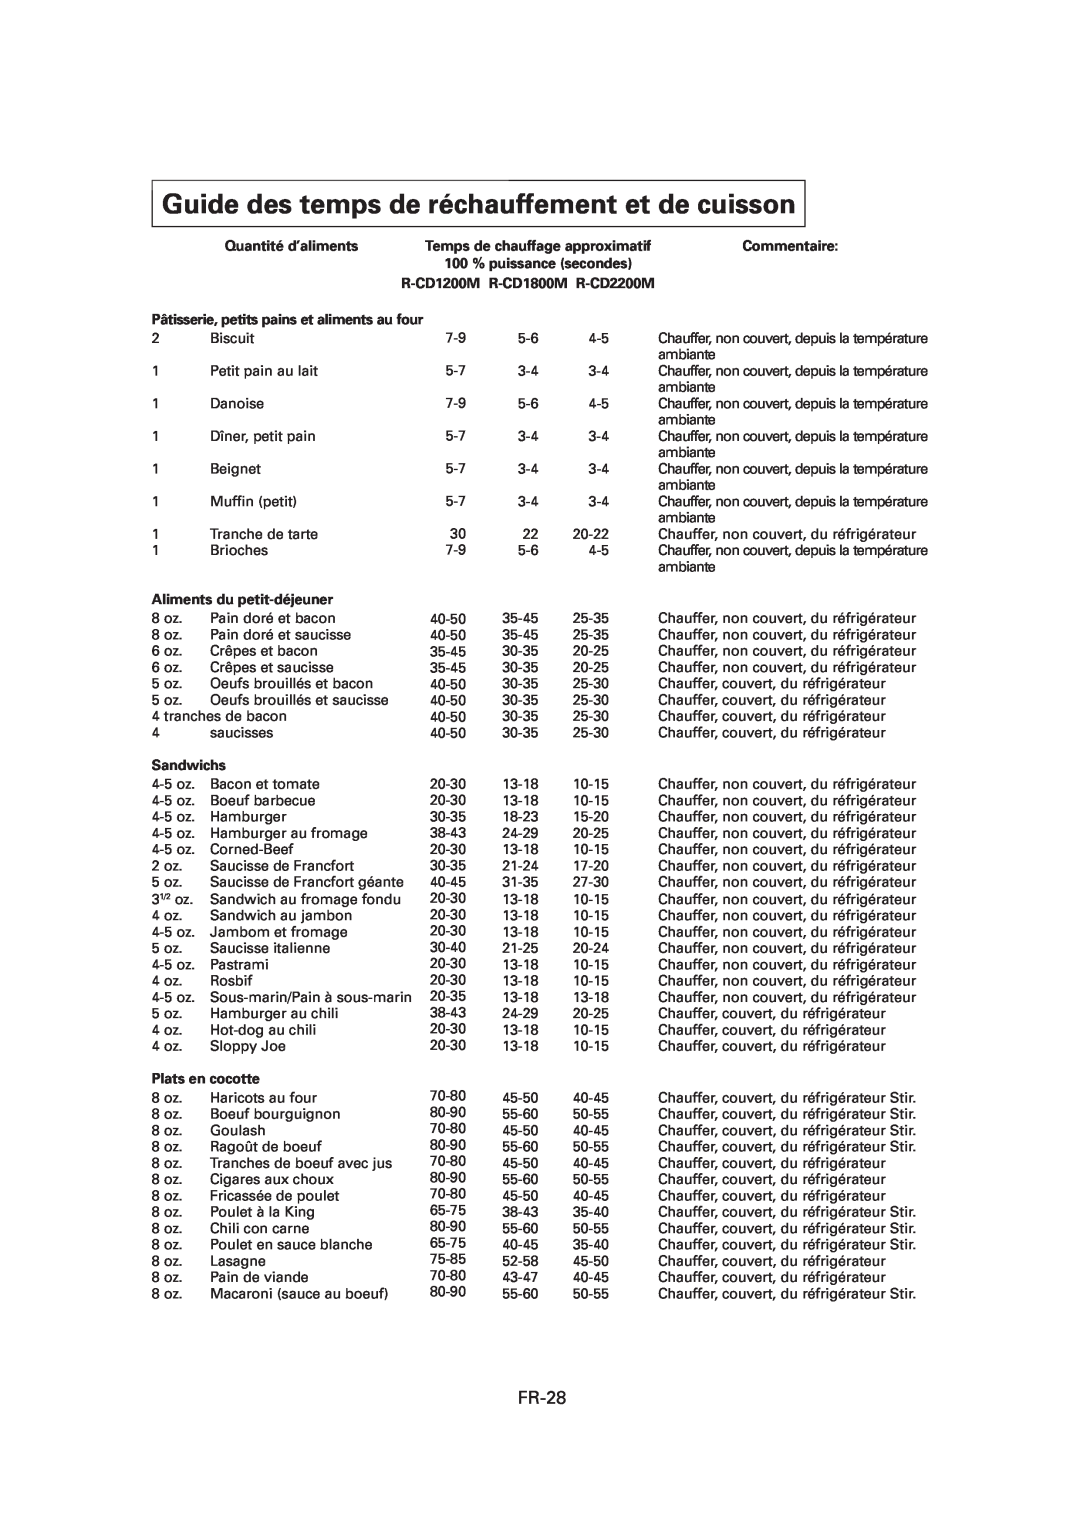 Sharp Guide des temps de réchauffement et de cuisson, Quantité d’aliments, R-CD1200M R-CD1800M R-CD2200M, Sandwichs 